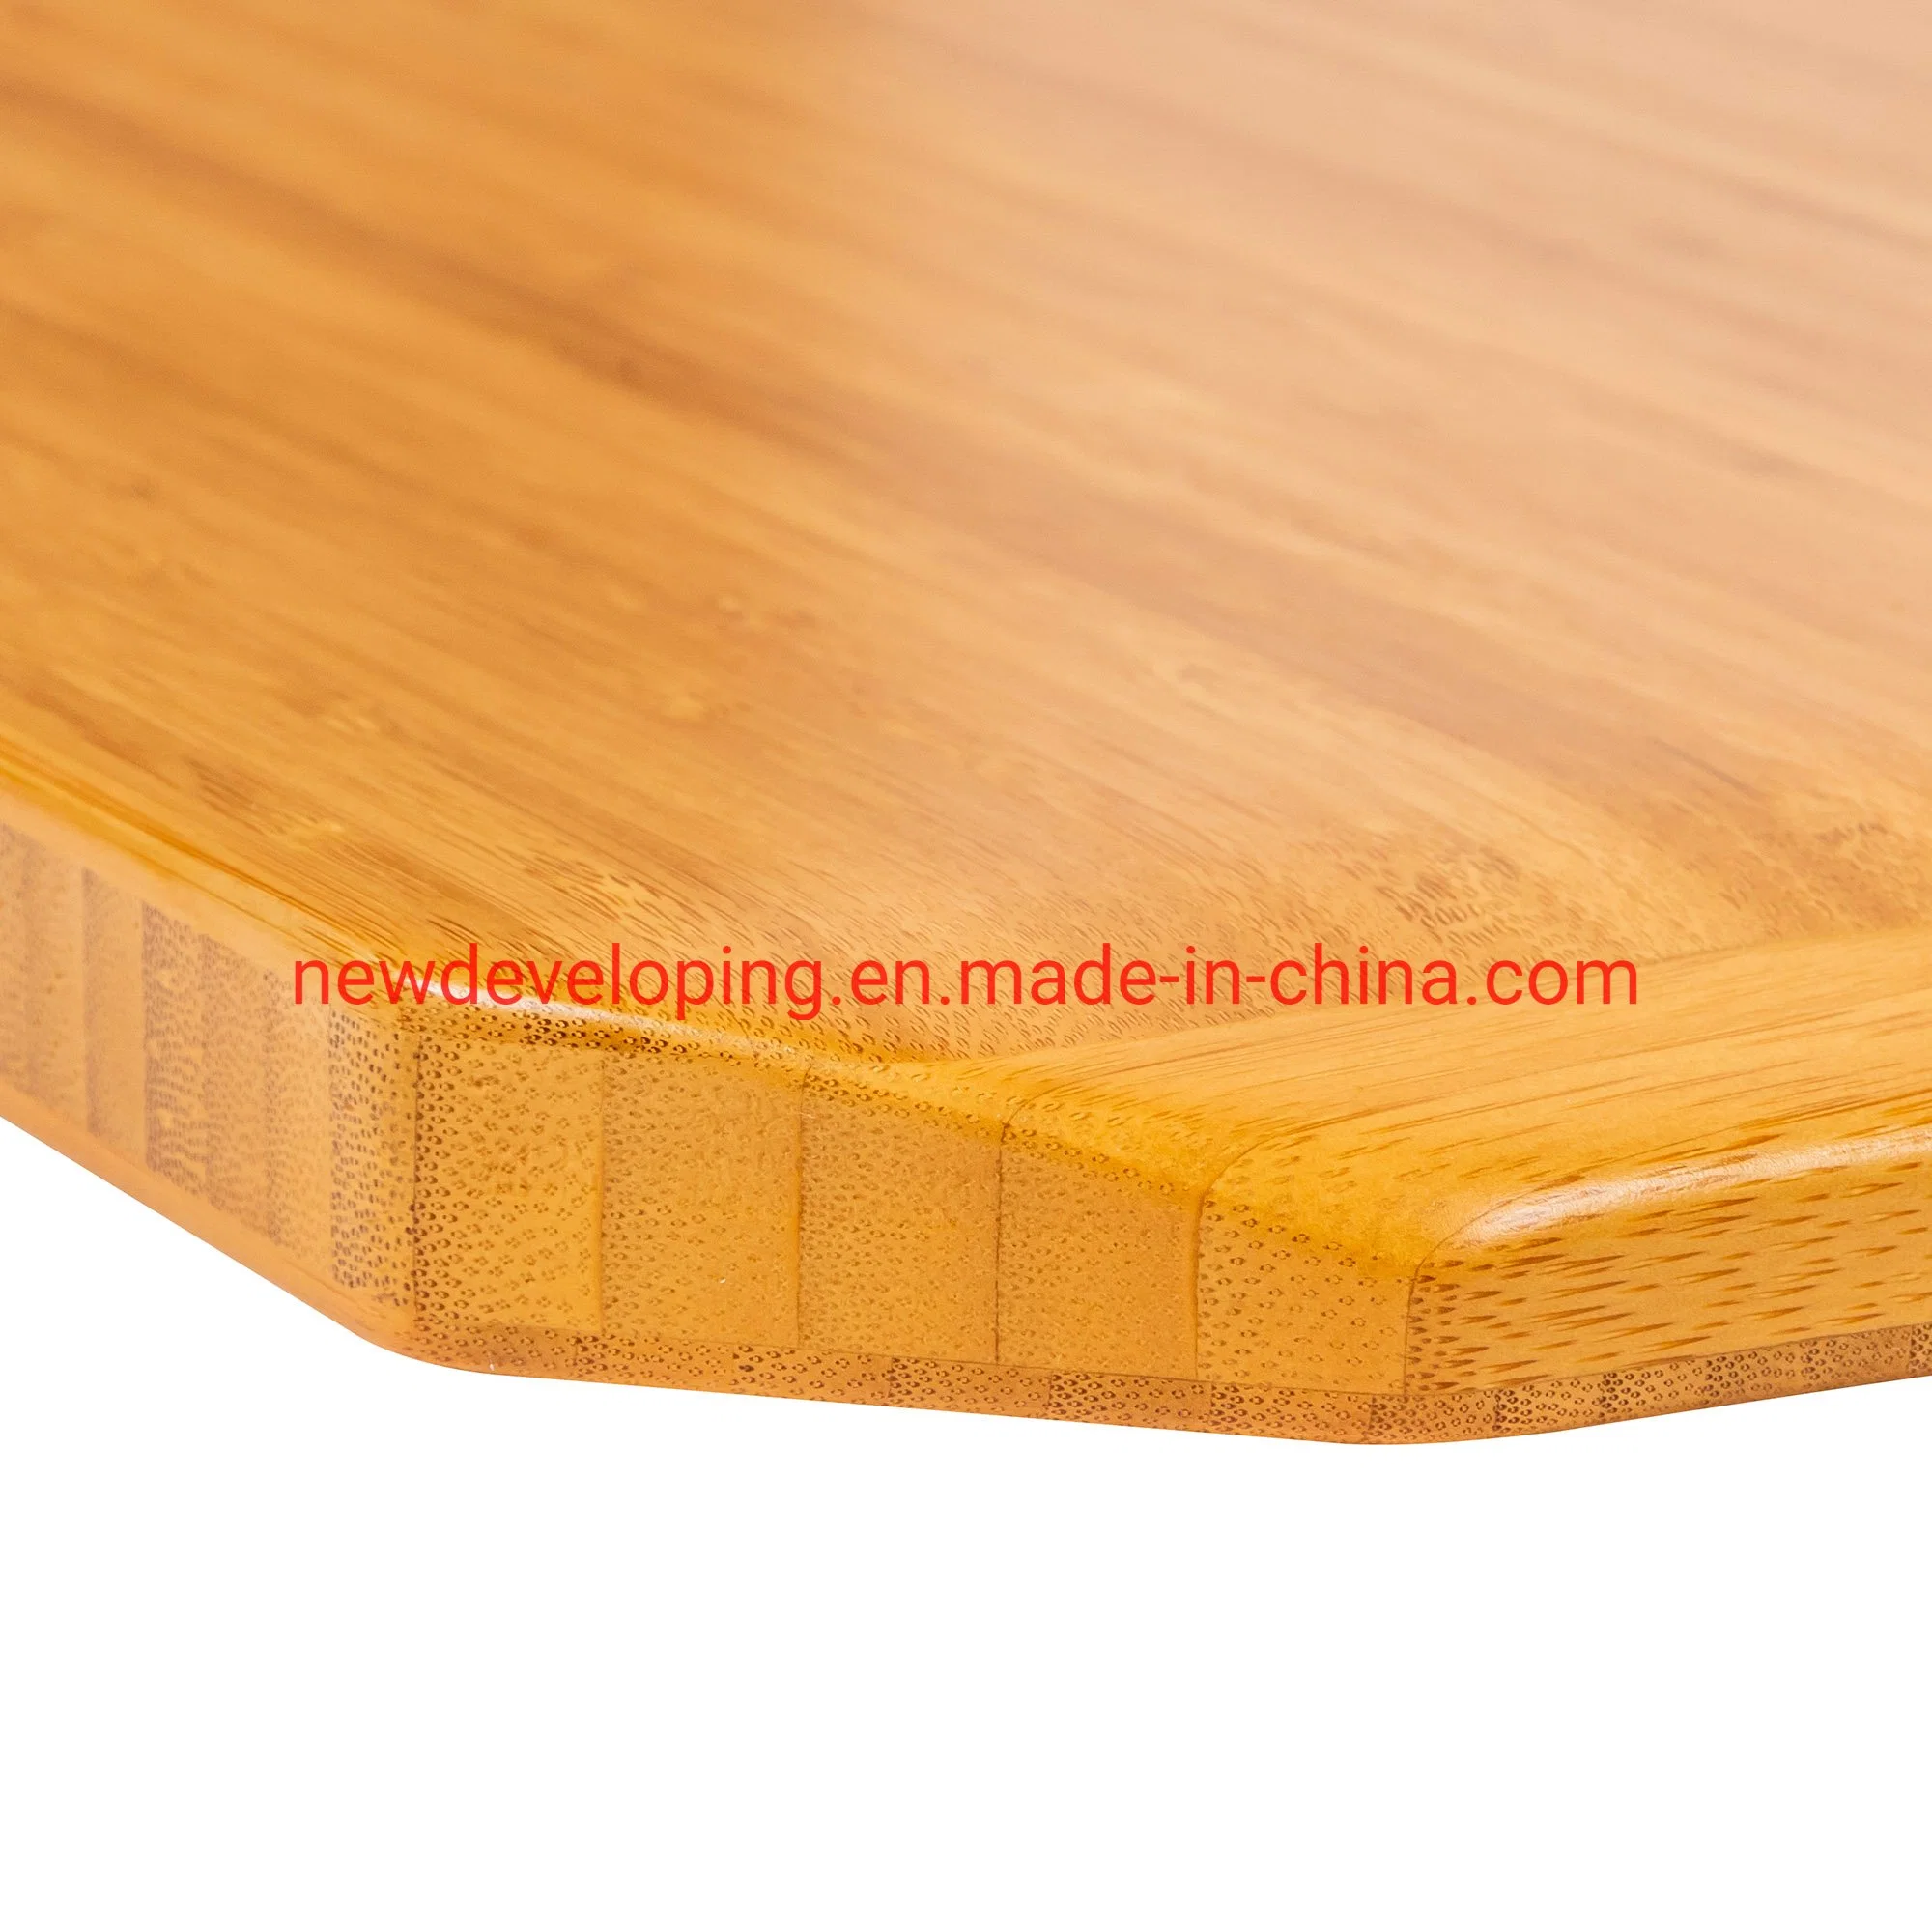 Природные твердых бамбук угол компьютера в таблице, сесть за стол с регулировкой по высоте постоянного таблица